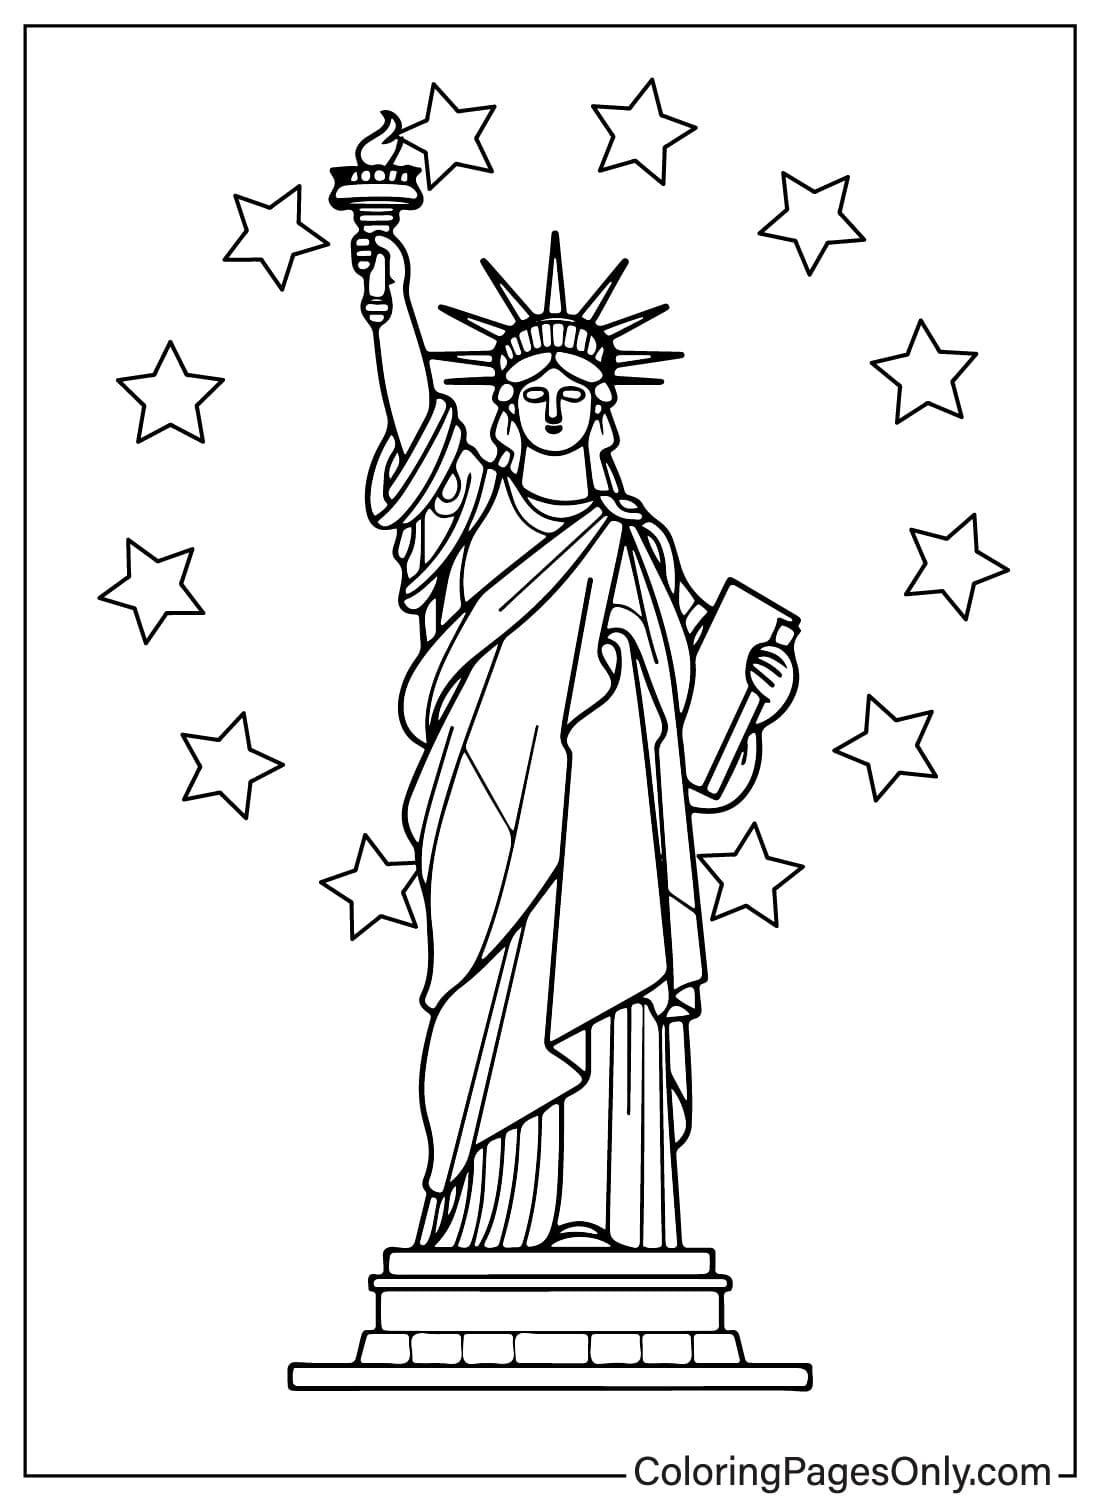 Imagem da Estátua da Liberdade para colorir da Estátua da Liberdade